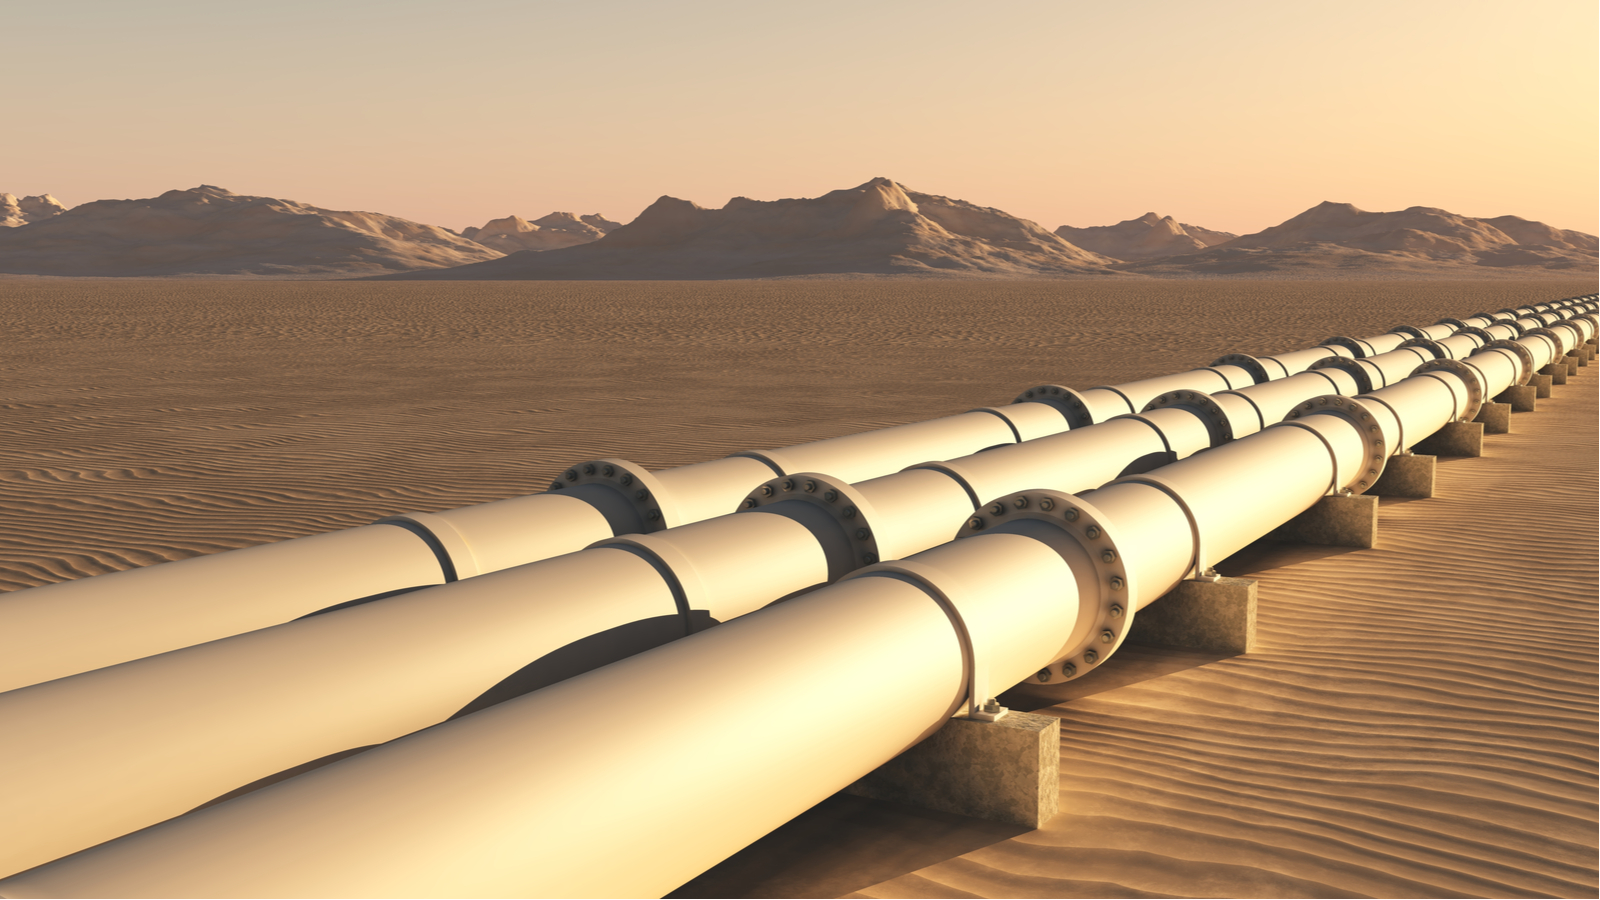 Pipelines in the desert representing energy stocks.